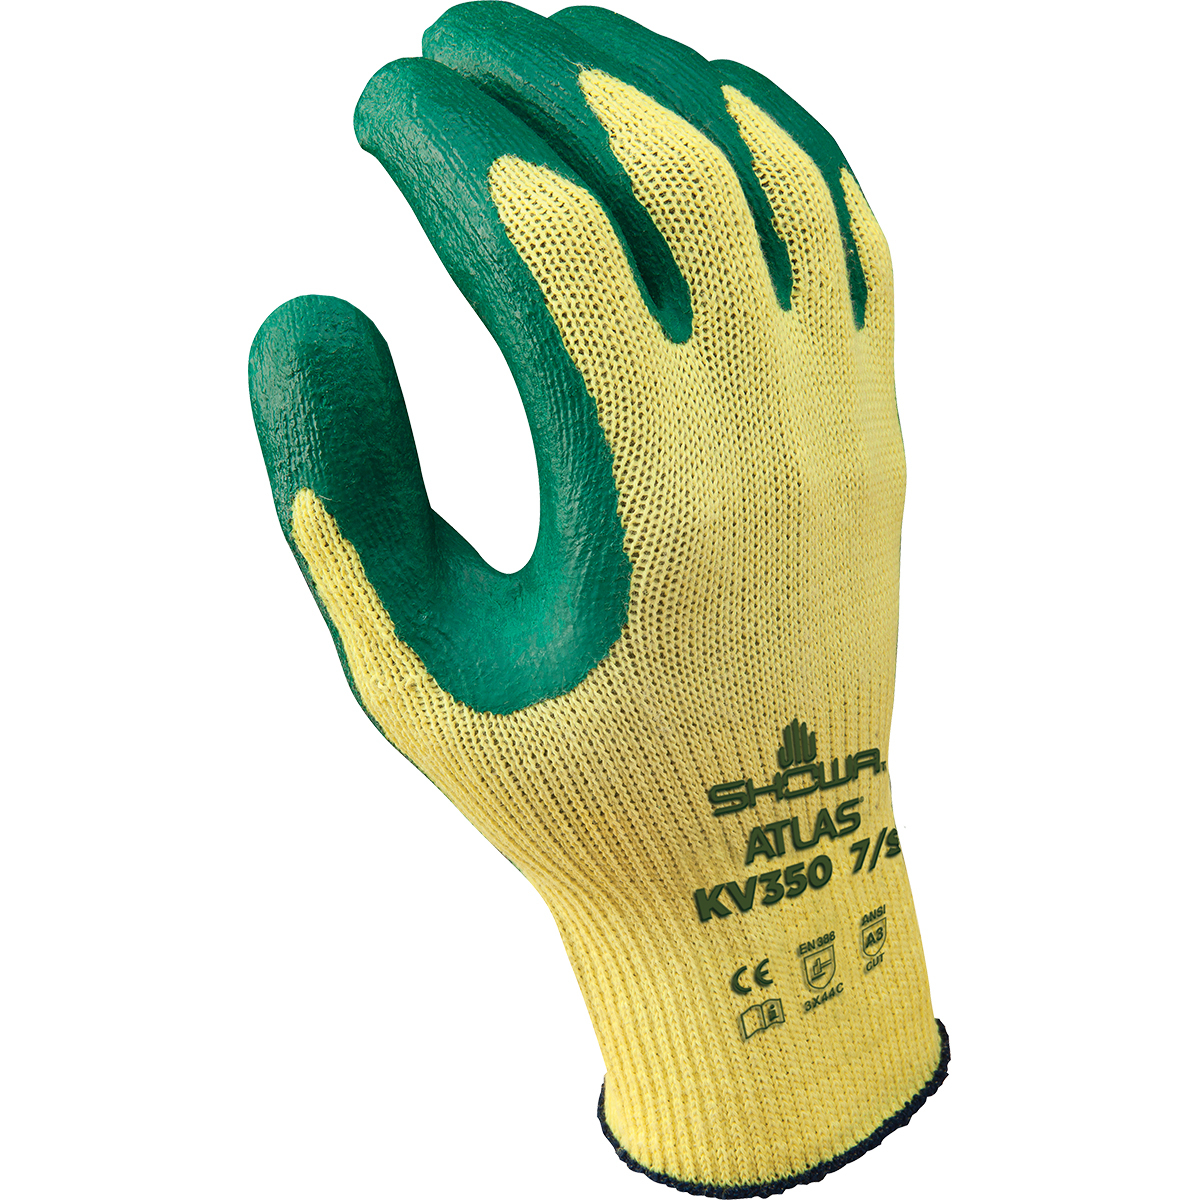 Showa Size 7 Atlas KV350 10 Gauge Dupont Kevlar Cut Resistant Gloves with Nitrile Coated Palm